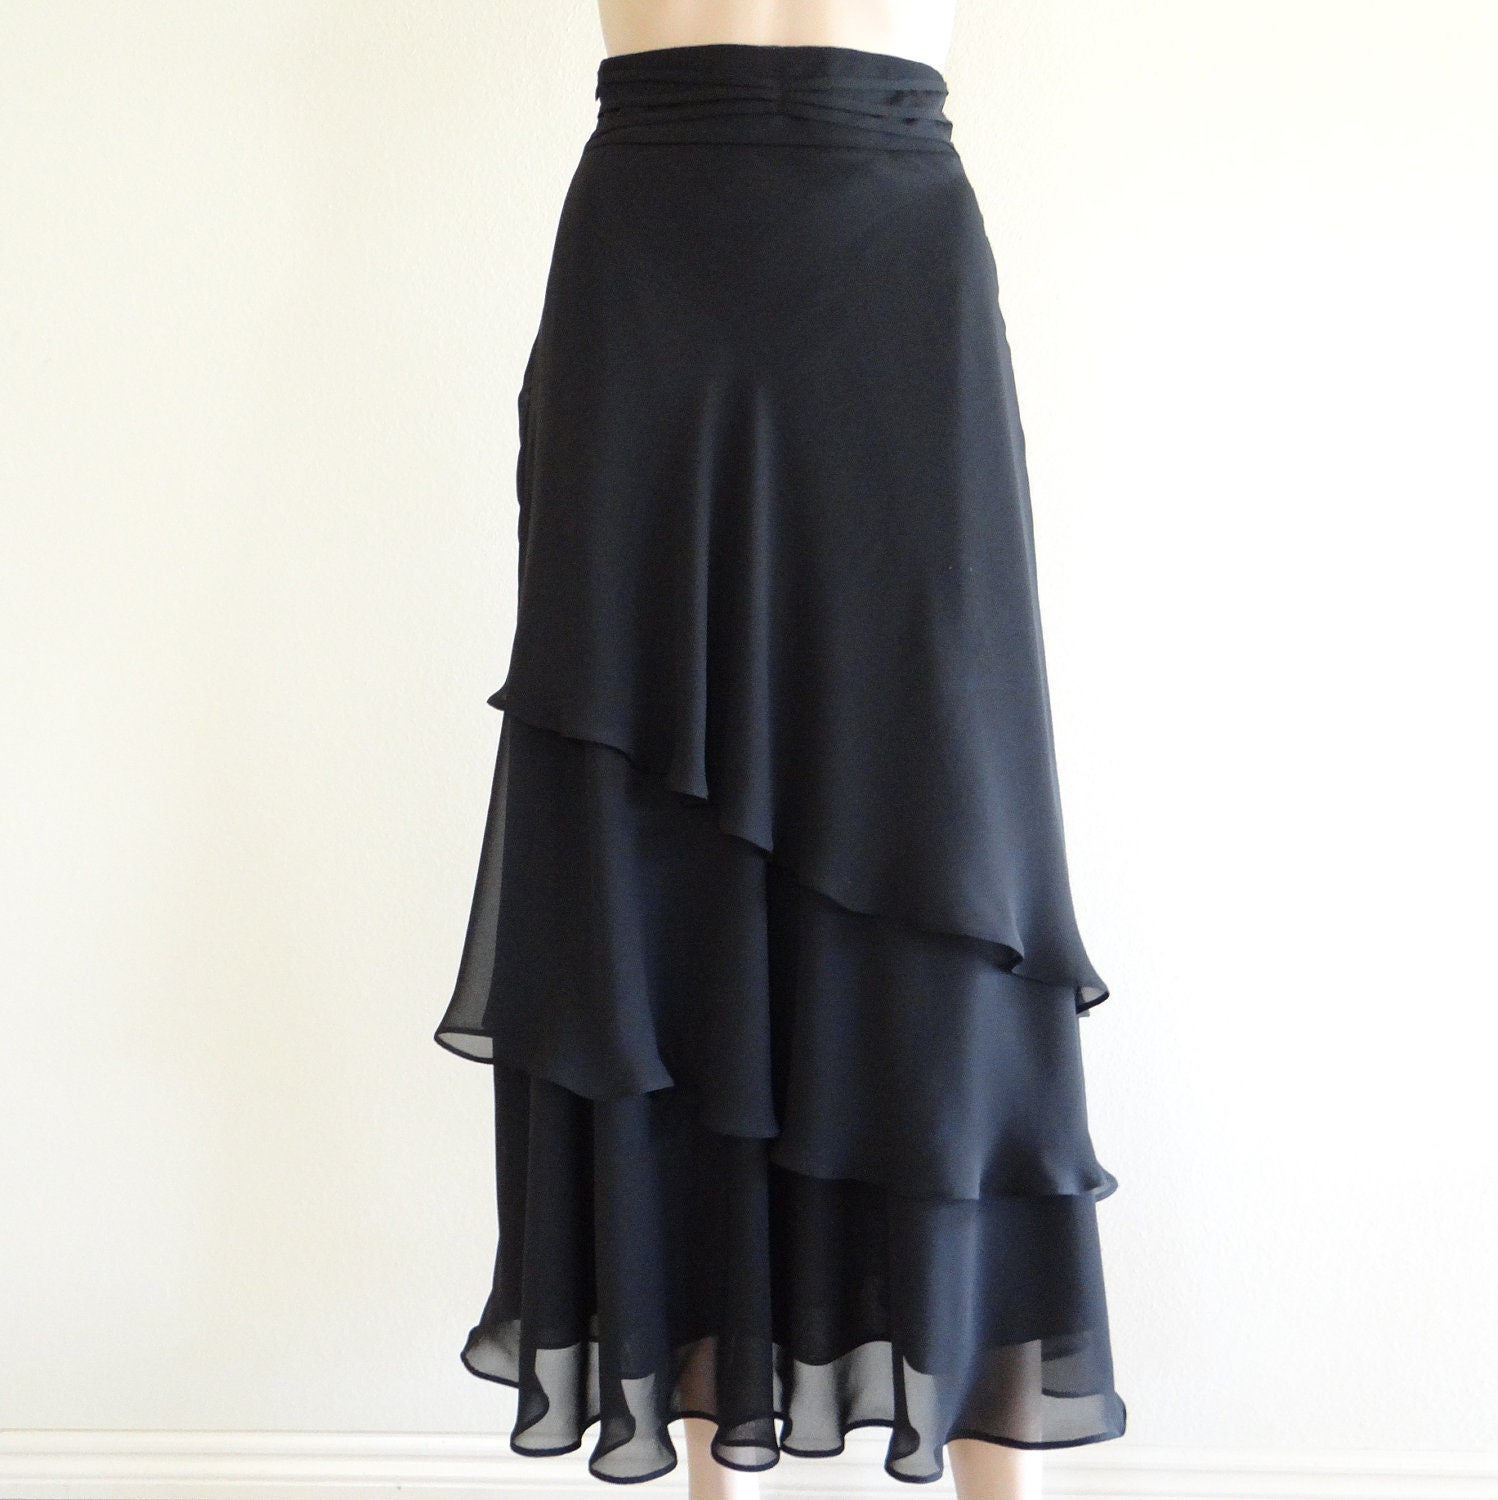 Items Similar To Black Long Skirt Maxi Skirt Evening Skirt Party Skirt On Etsy